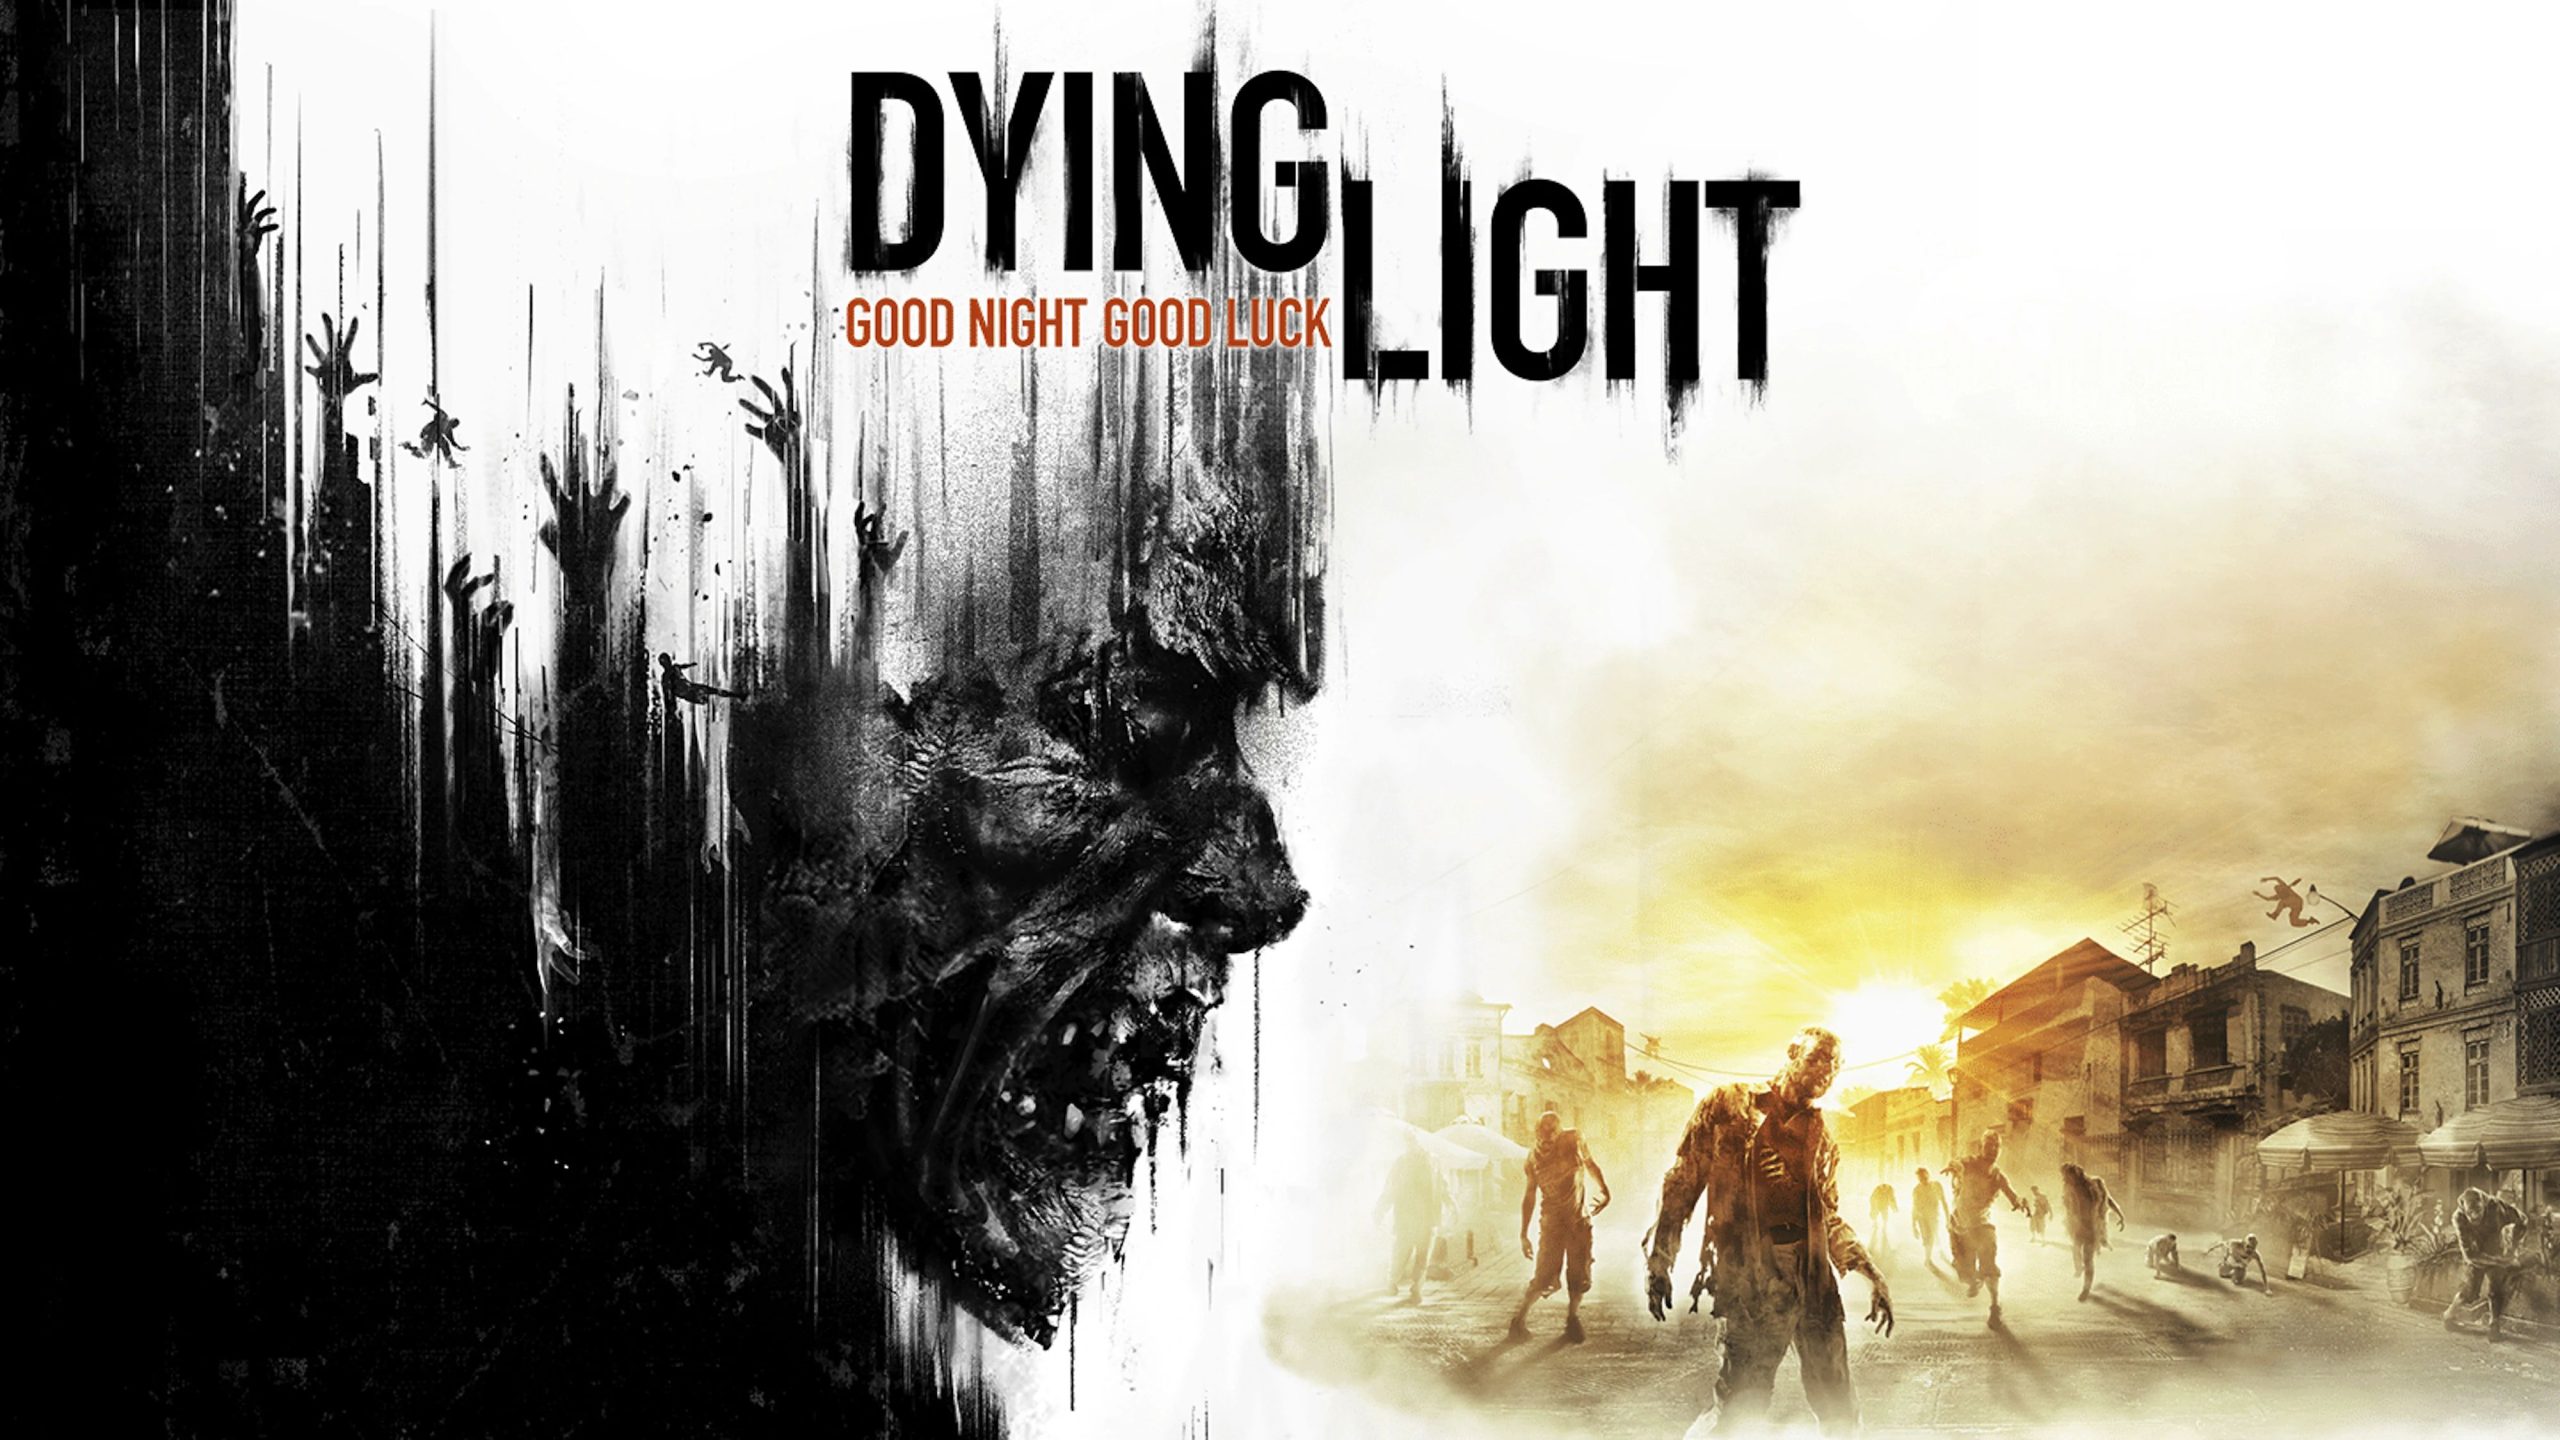 Éjt nappallá téve, vagy mi? – Dying Light kritika